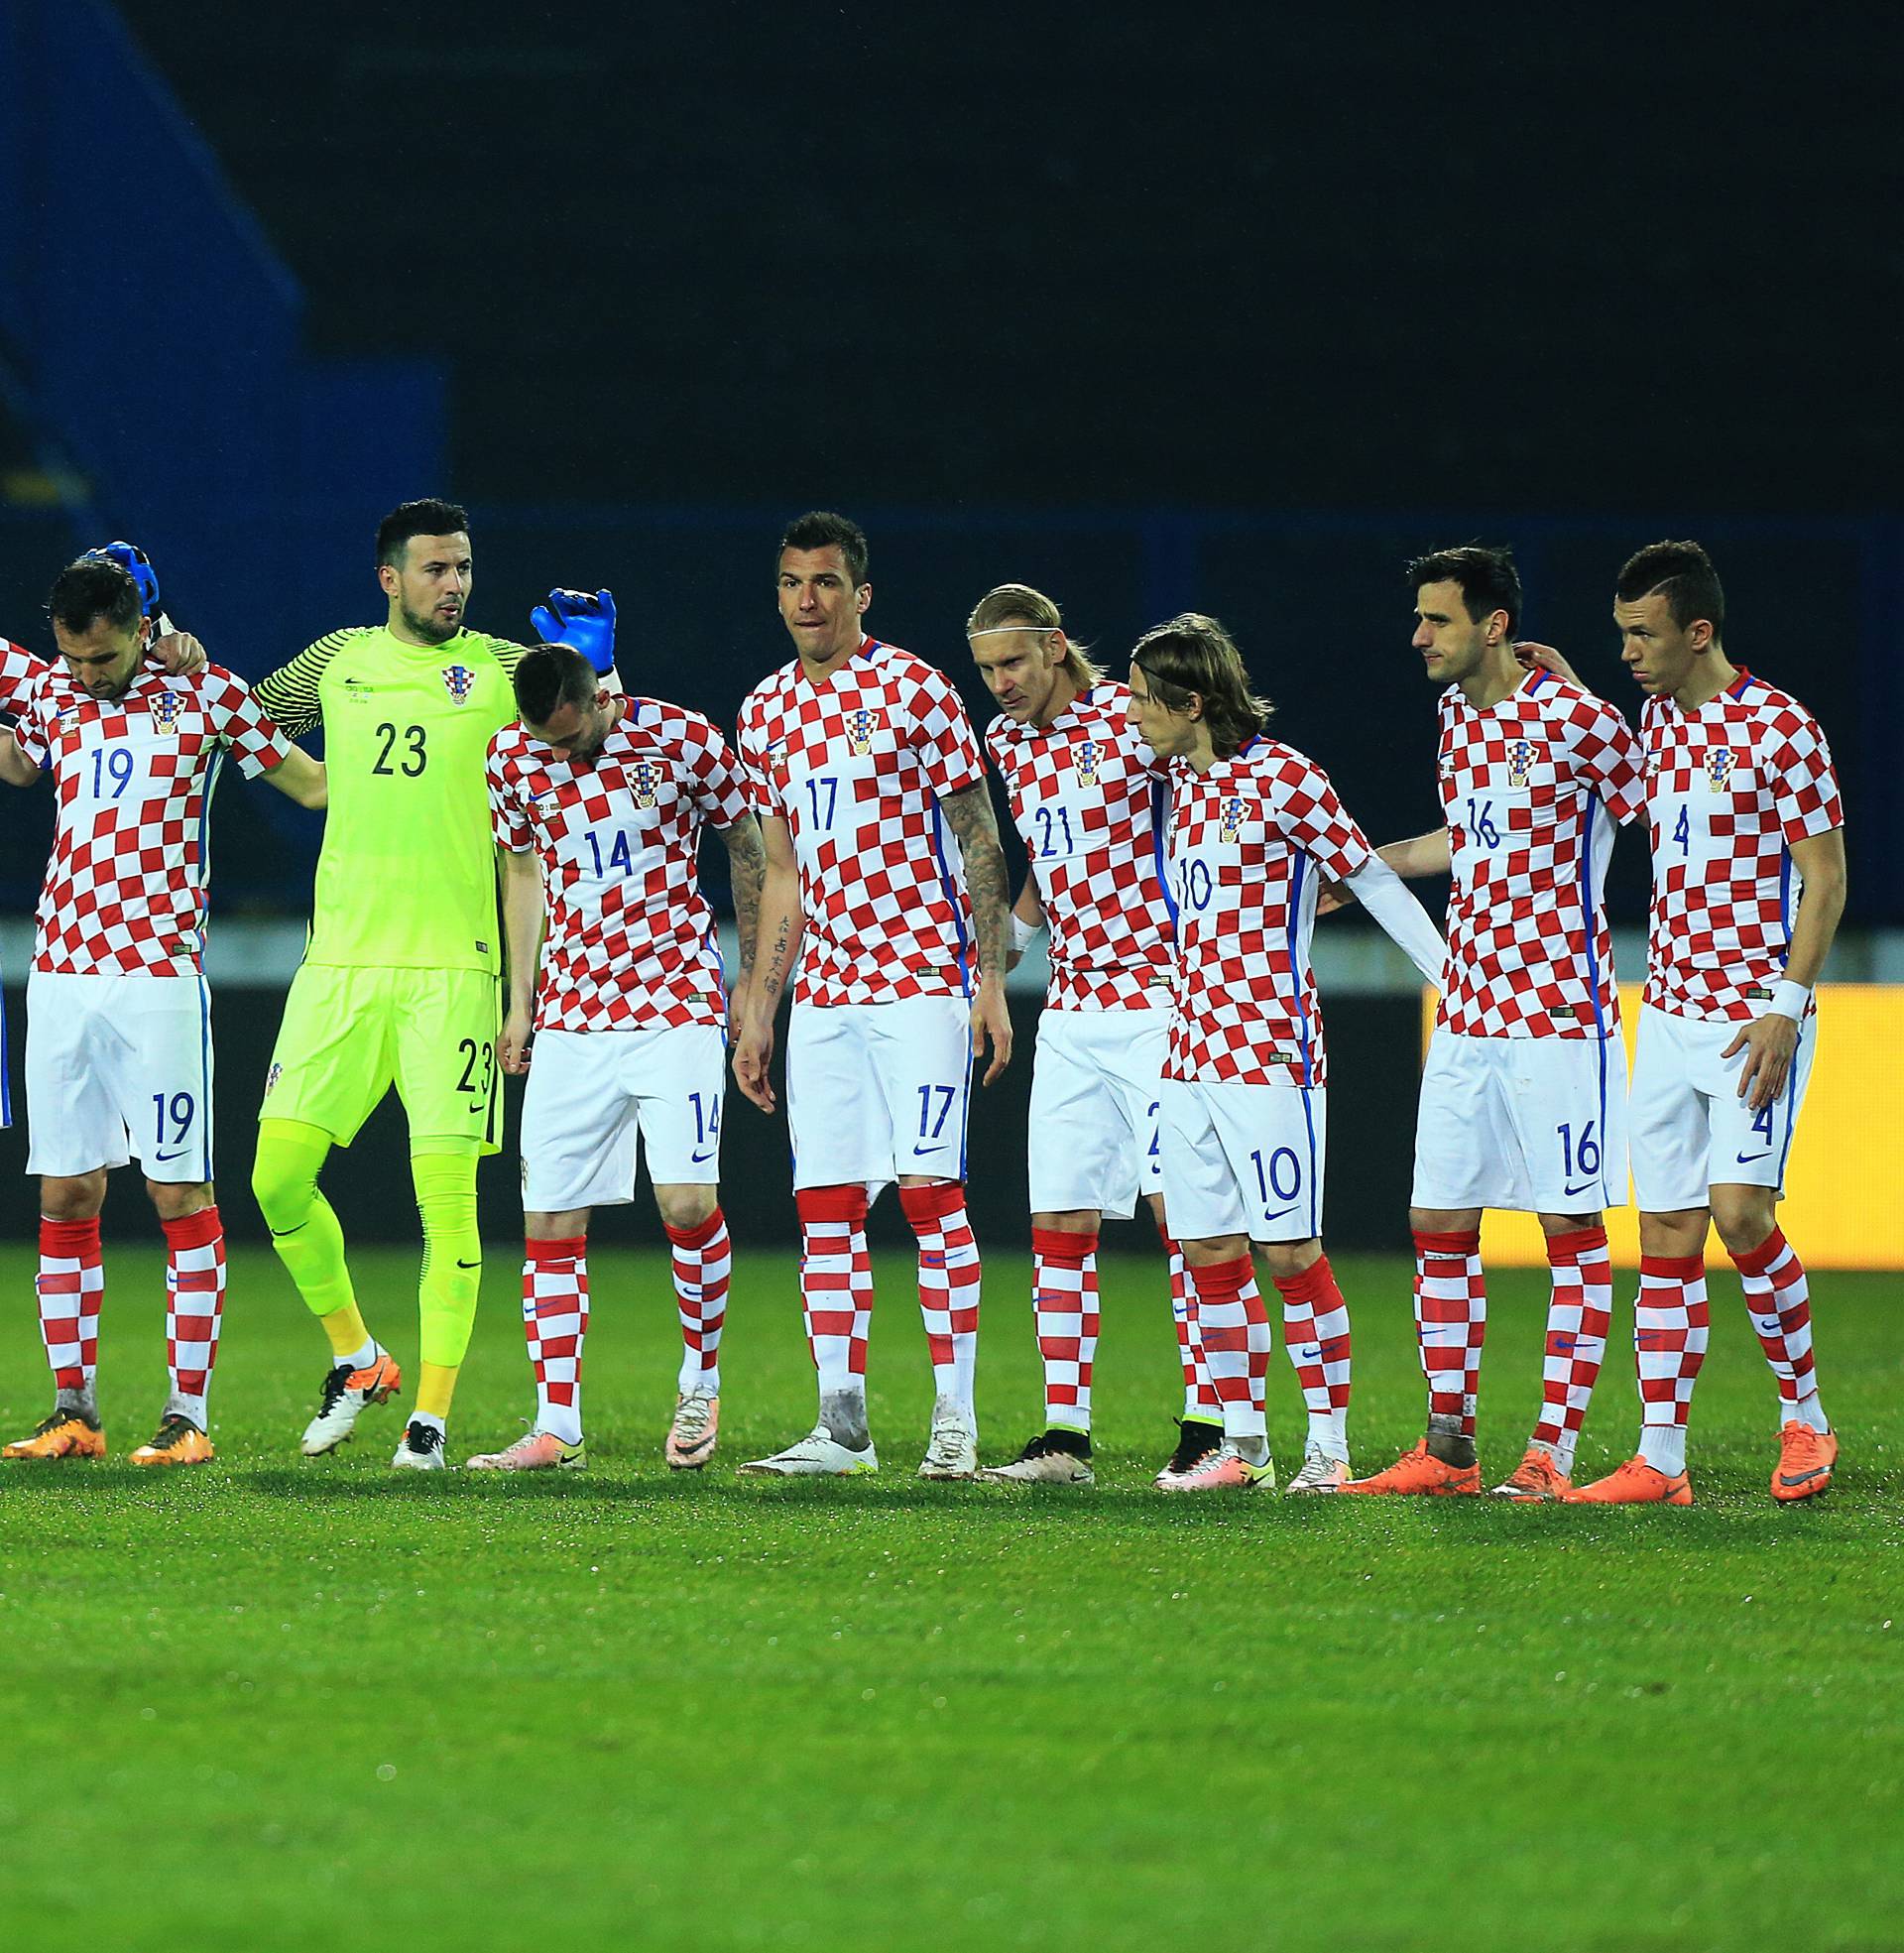 Hrvatske 'kockice' su najljepši dres na Europskom prvenstvu!